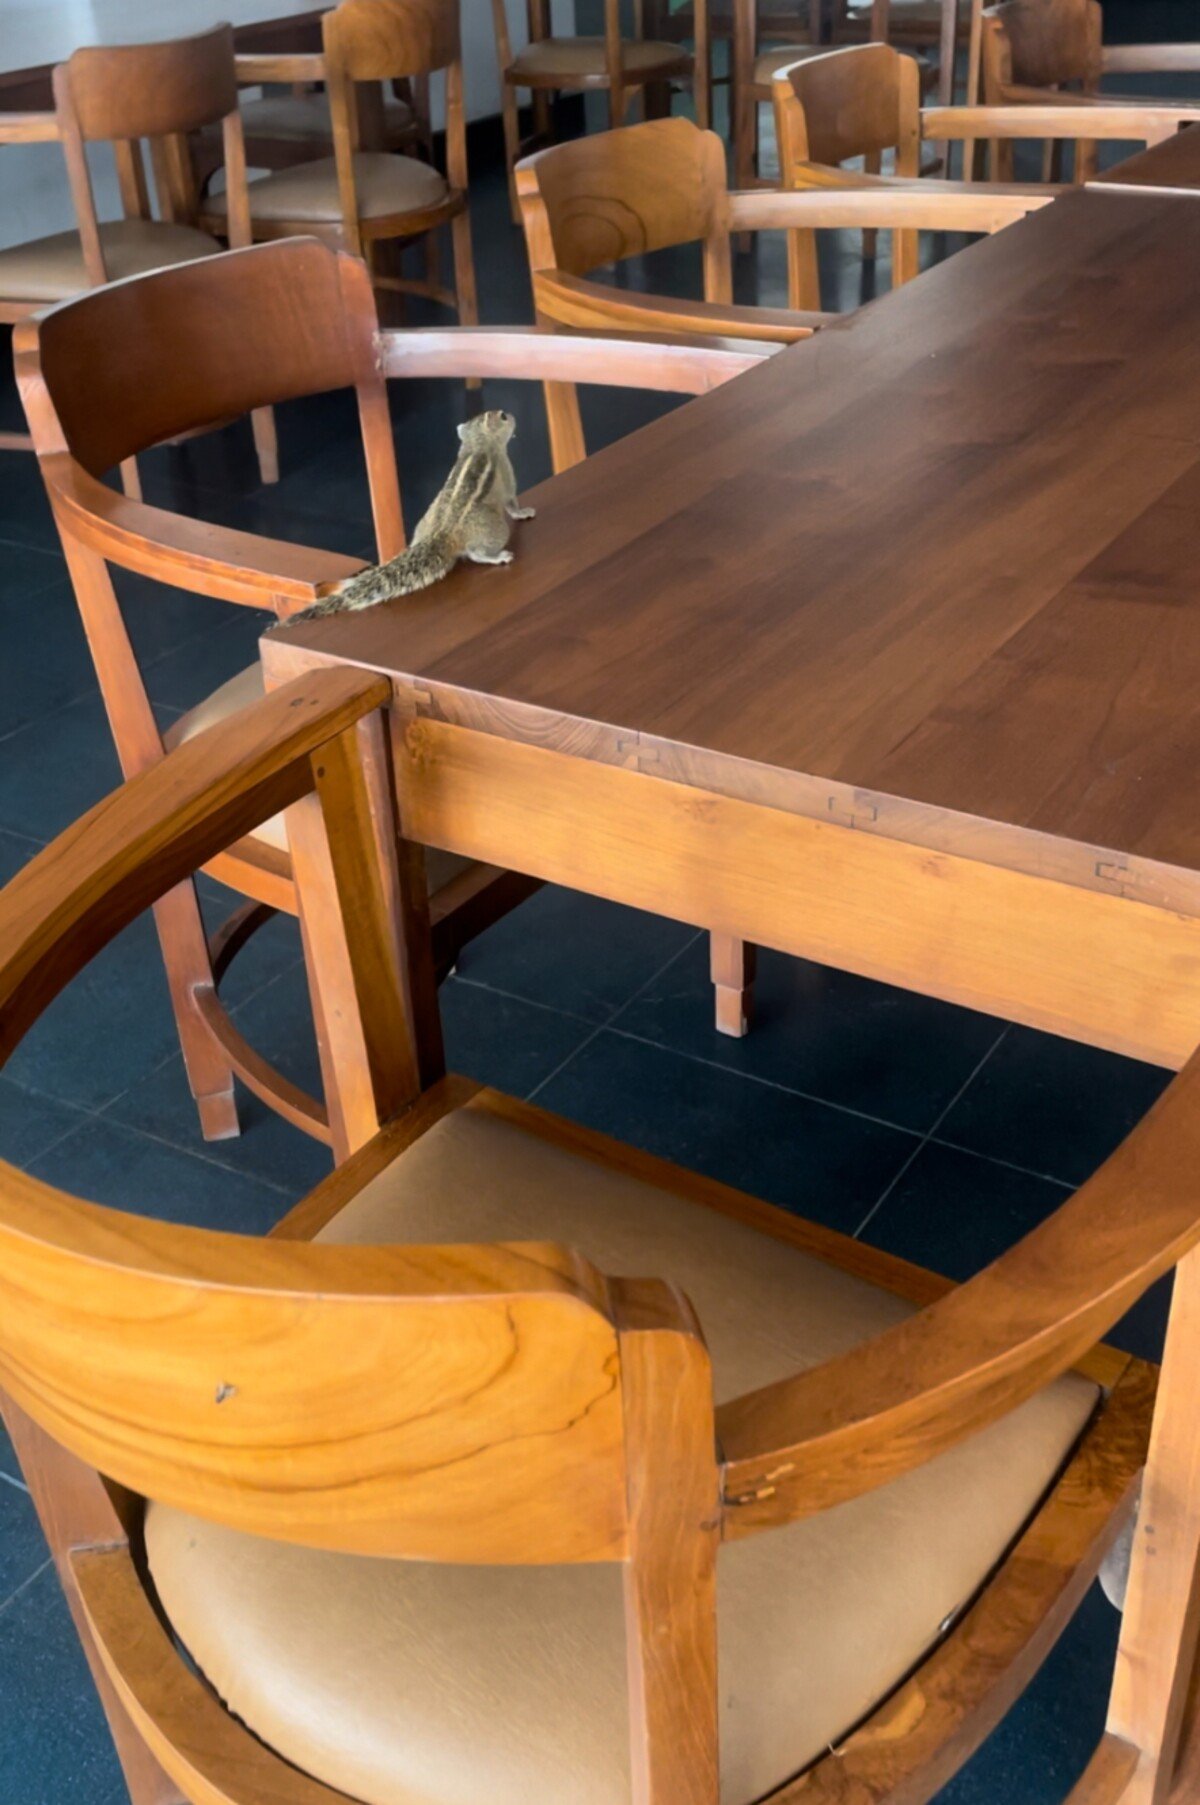 Pruhované veveričky nájdeš na Srí Lanke všade, táto liezla po stole v hotelovej reštaurácii. 